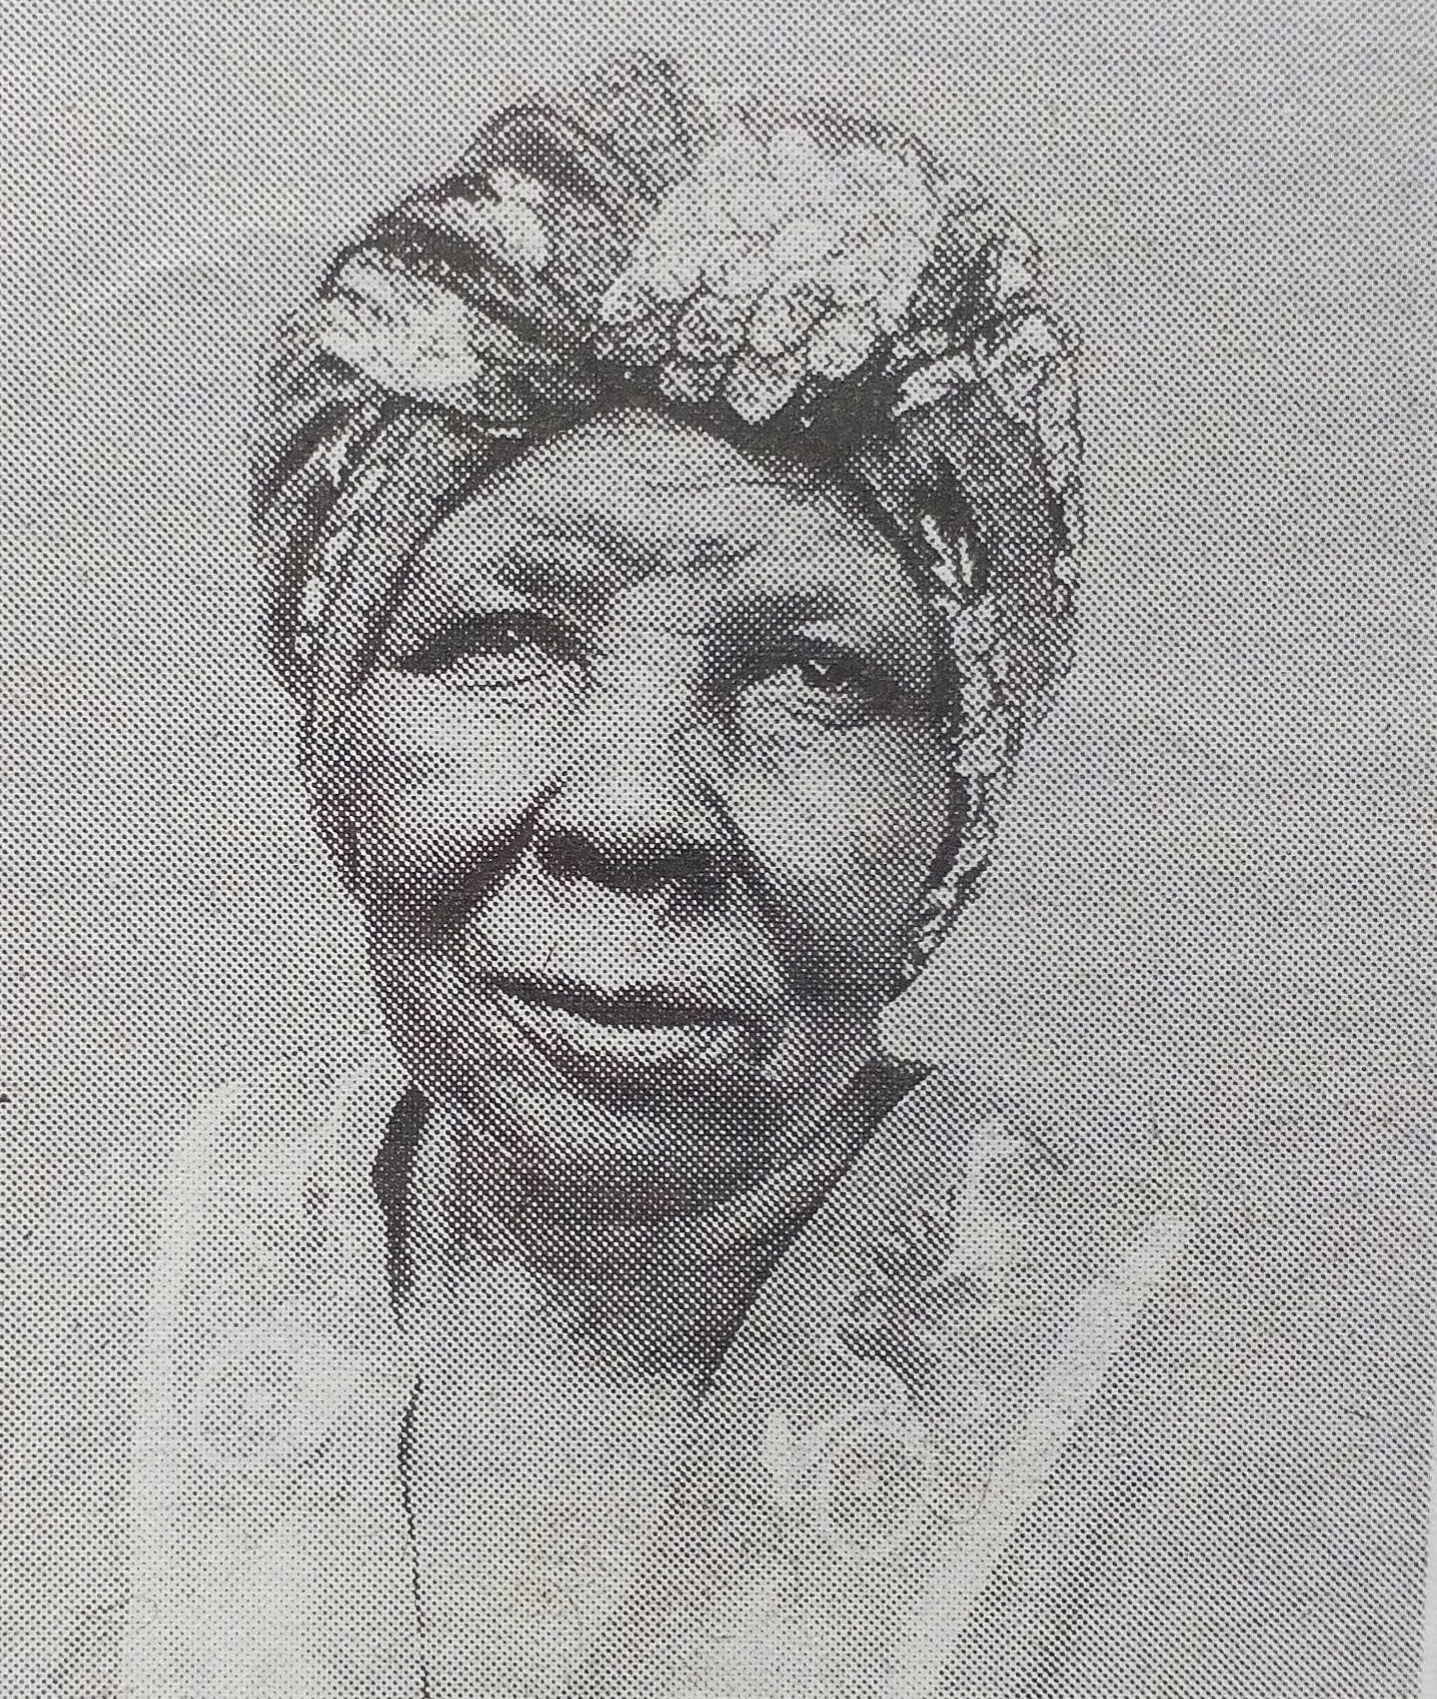 Obituary Image of Mrs. Rosebella Agolla Oluoch